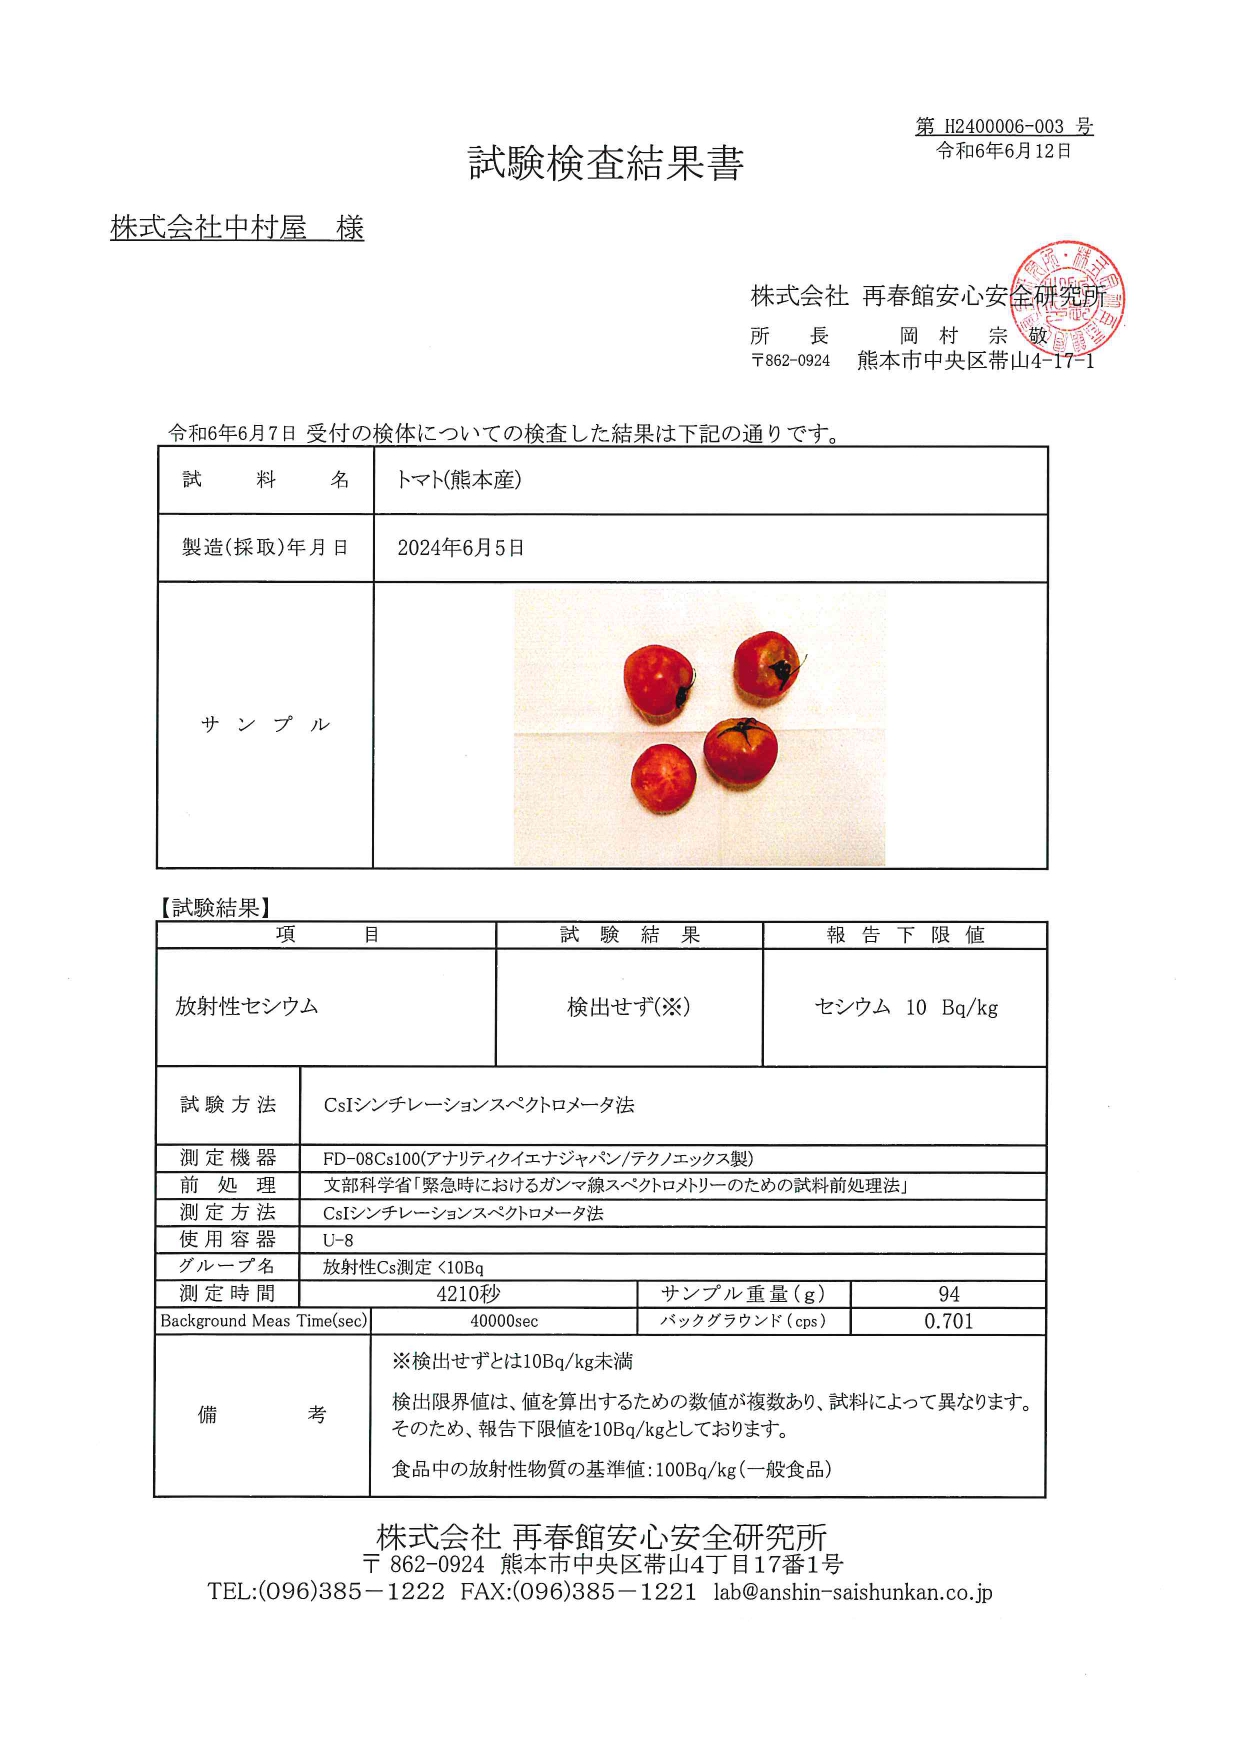 トマト（熊本）の検査結果